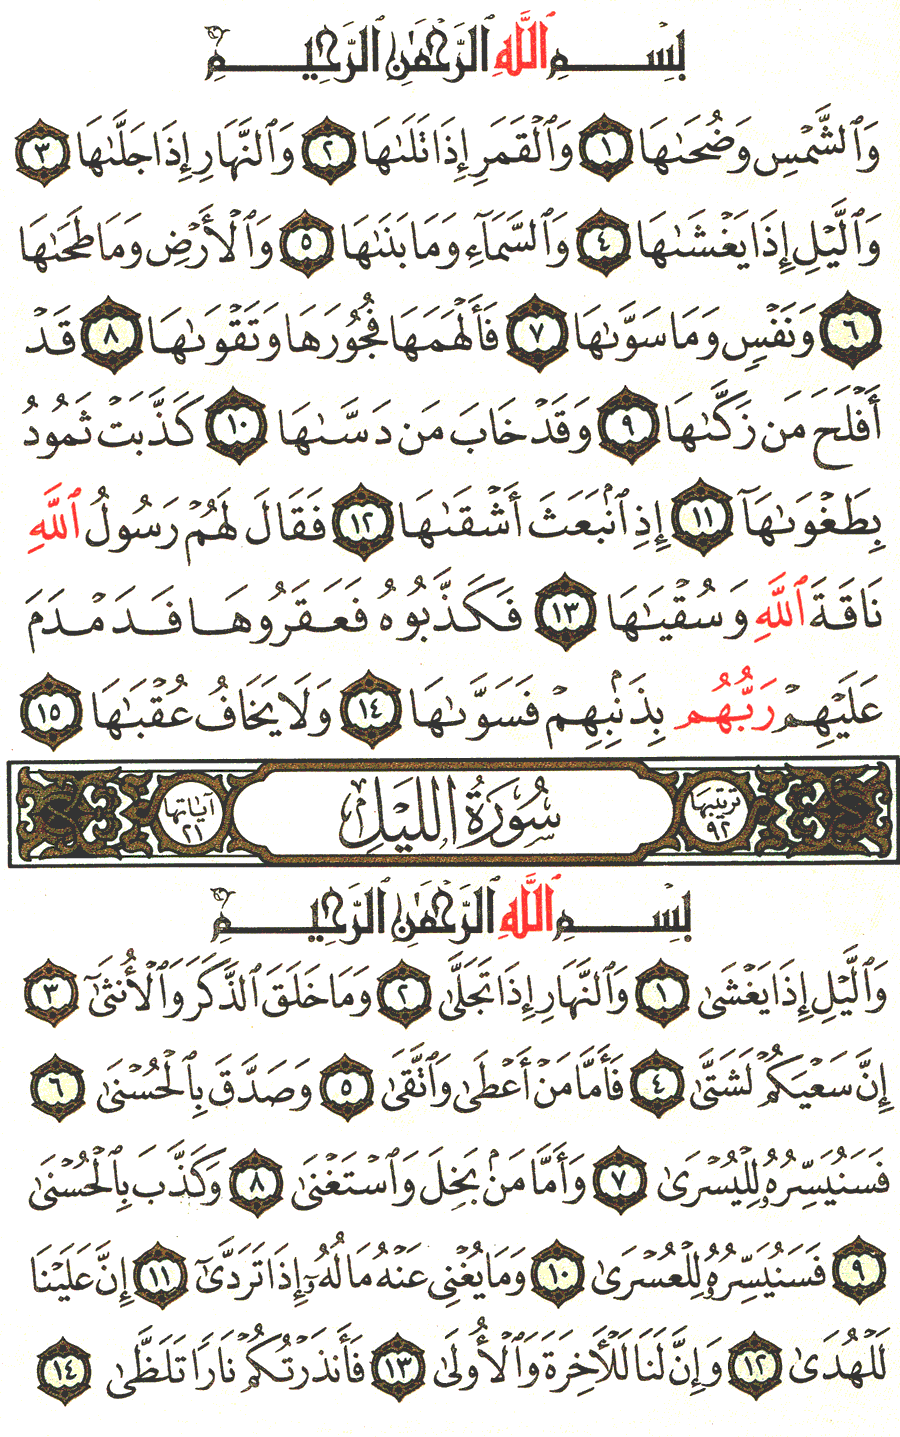 الصفحة 595 من القرآن الكريم